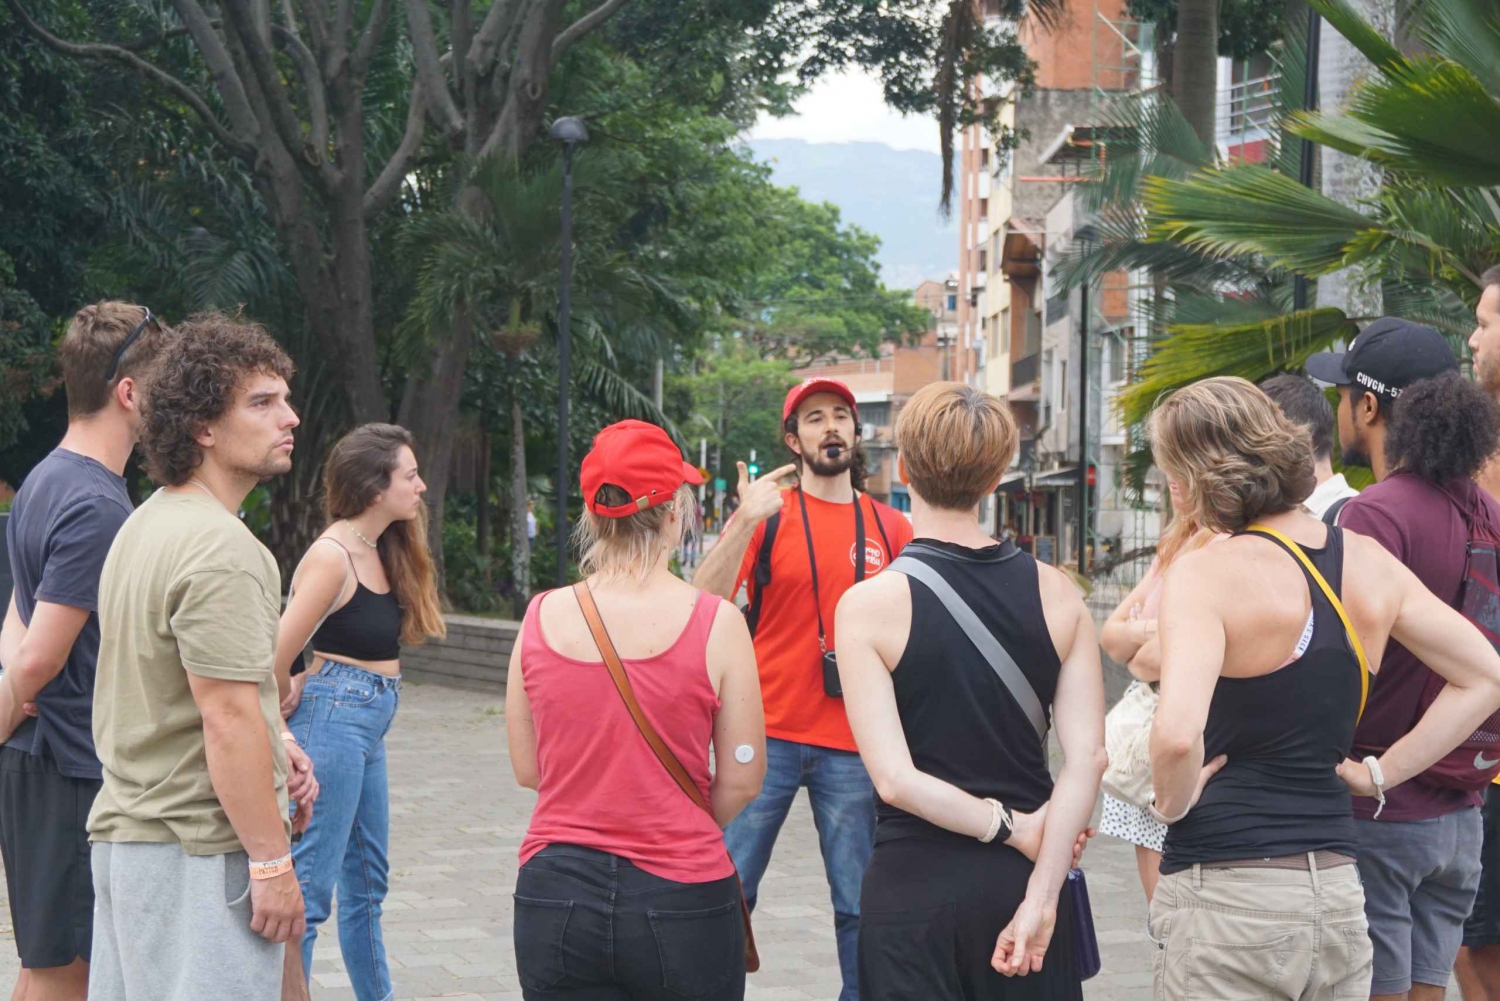 Violence & Post-conflict Walking Tour: after Medellin Cartel